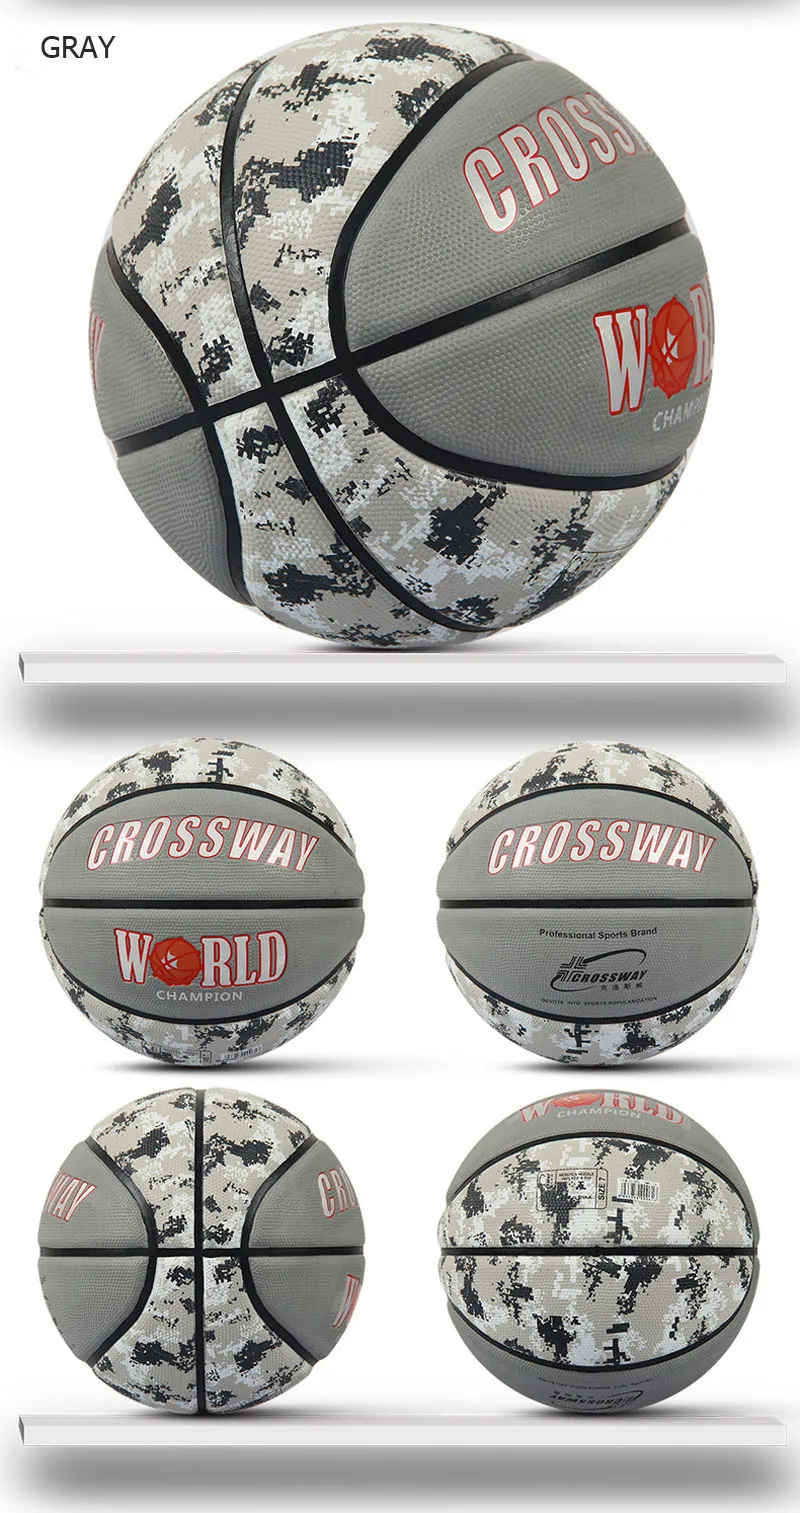 CROSSWAY носимый резиновый баскетбольный мяч Официальный Размер 7 баскетбольный Спорт соревнование обучение Крытый открытый высокая эластичность